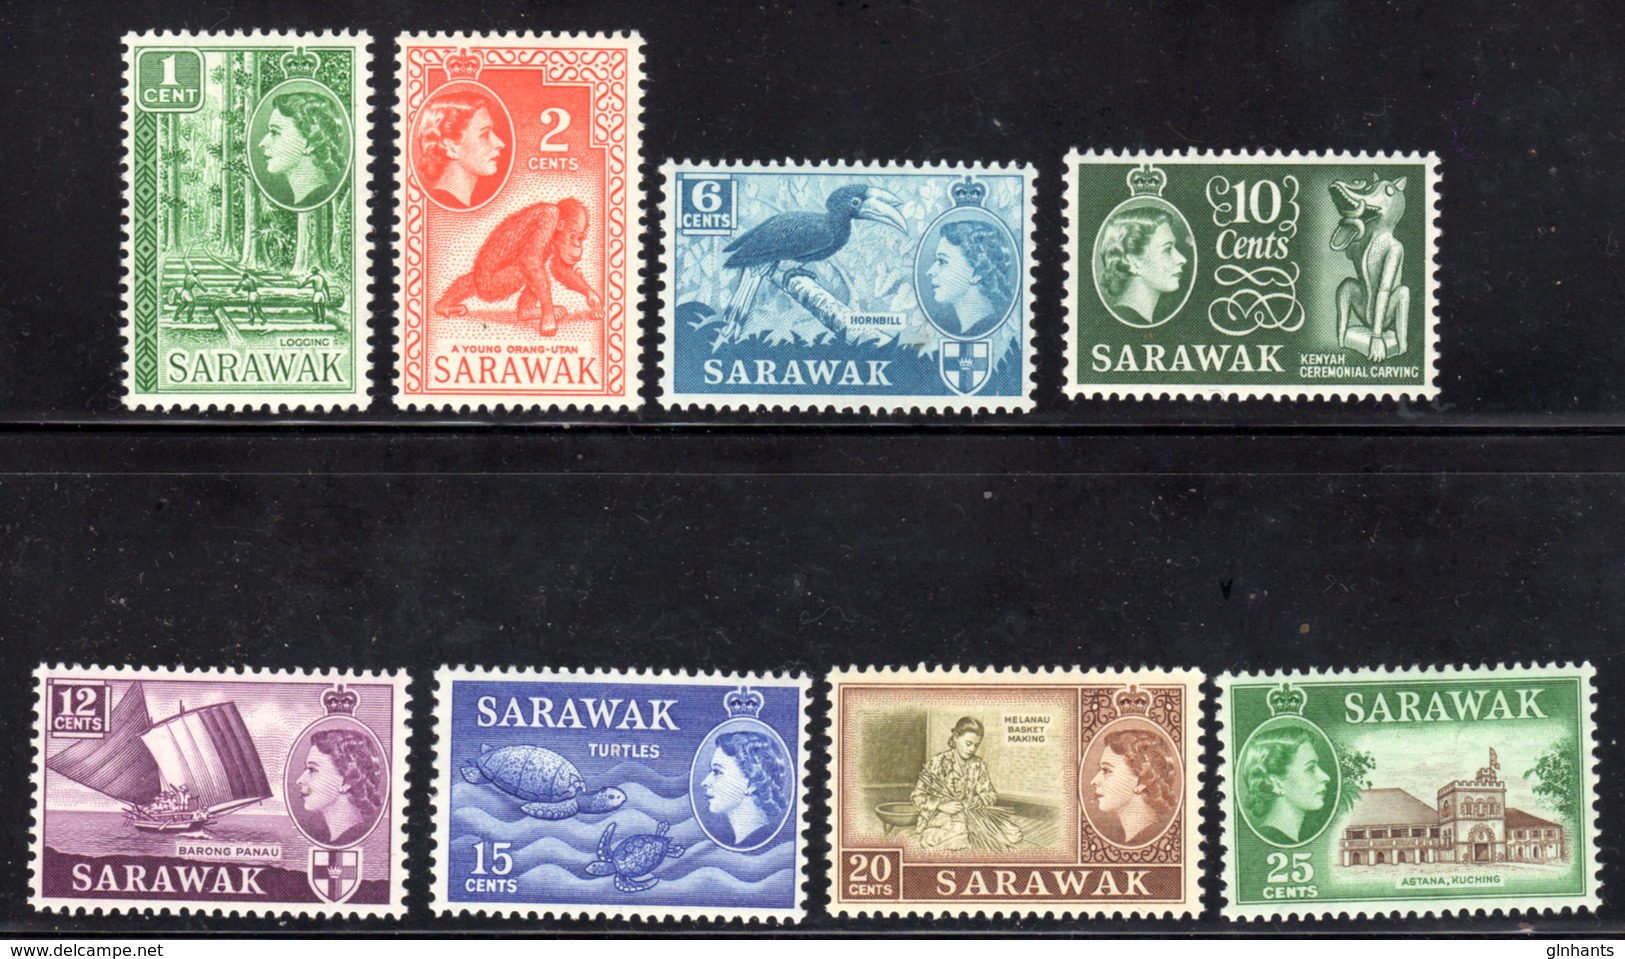 SARAWAK - 1964 W12 ST EDWARD'S CROWN SET COMPLETE (8V) FINE MNH ** SG 204-211 - Maleisië (1964-...)